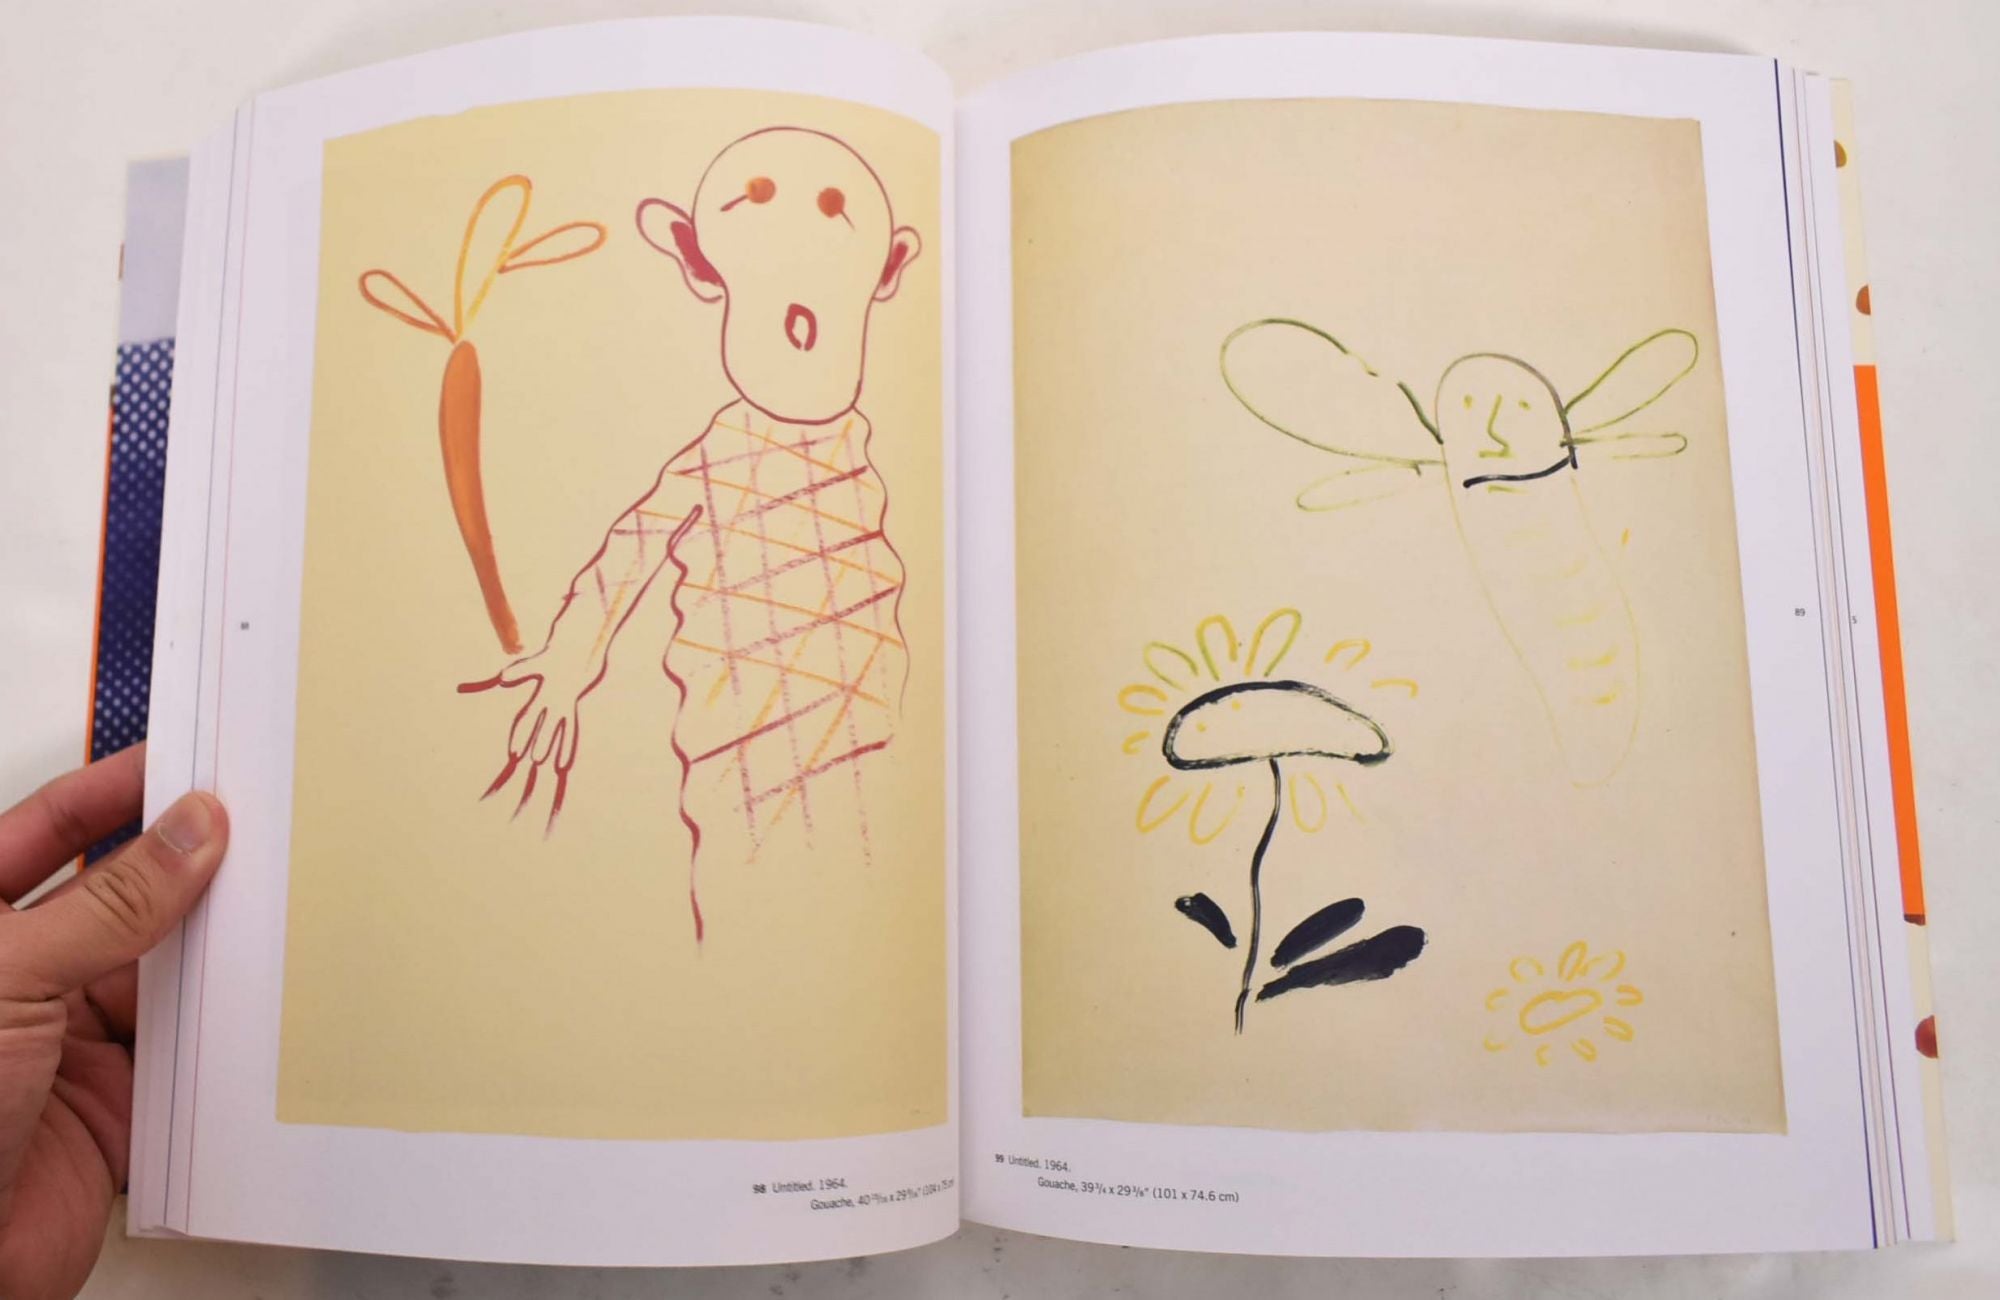 Sigmar Polke: Works on Paper, 1963-1974 | Margit Rowell, Michael 